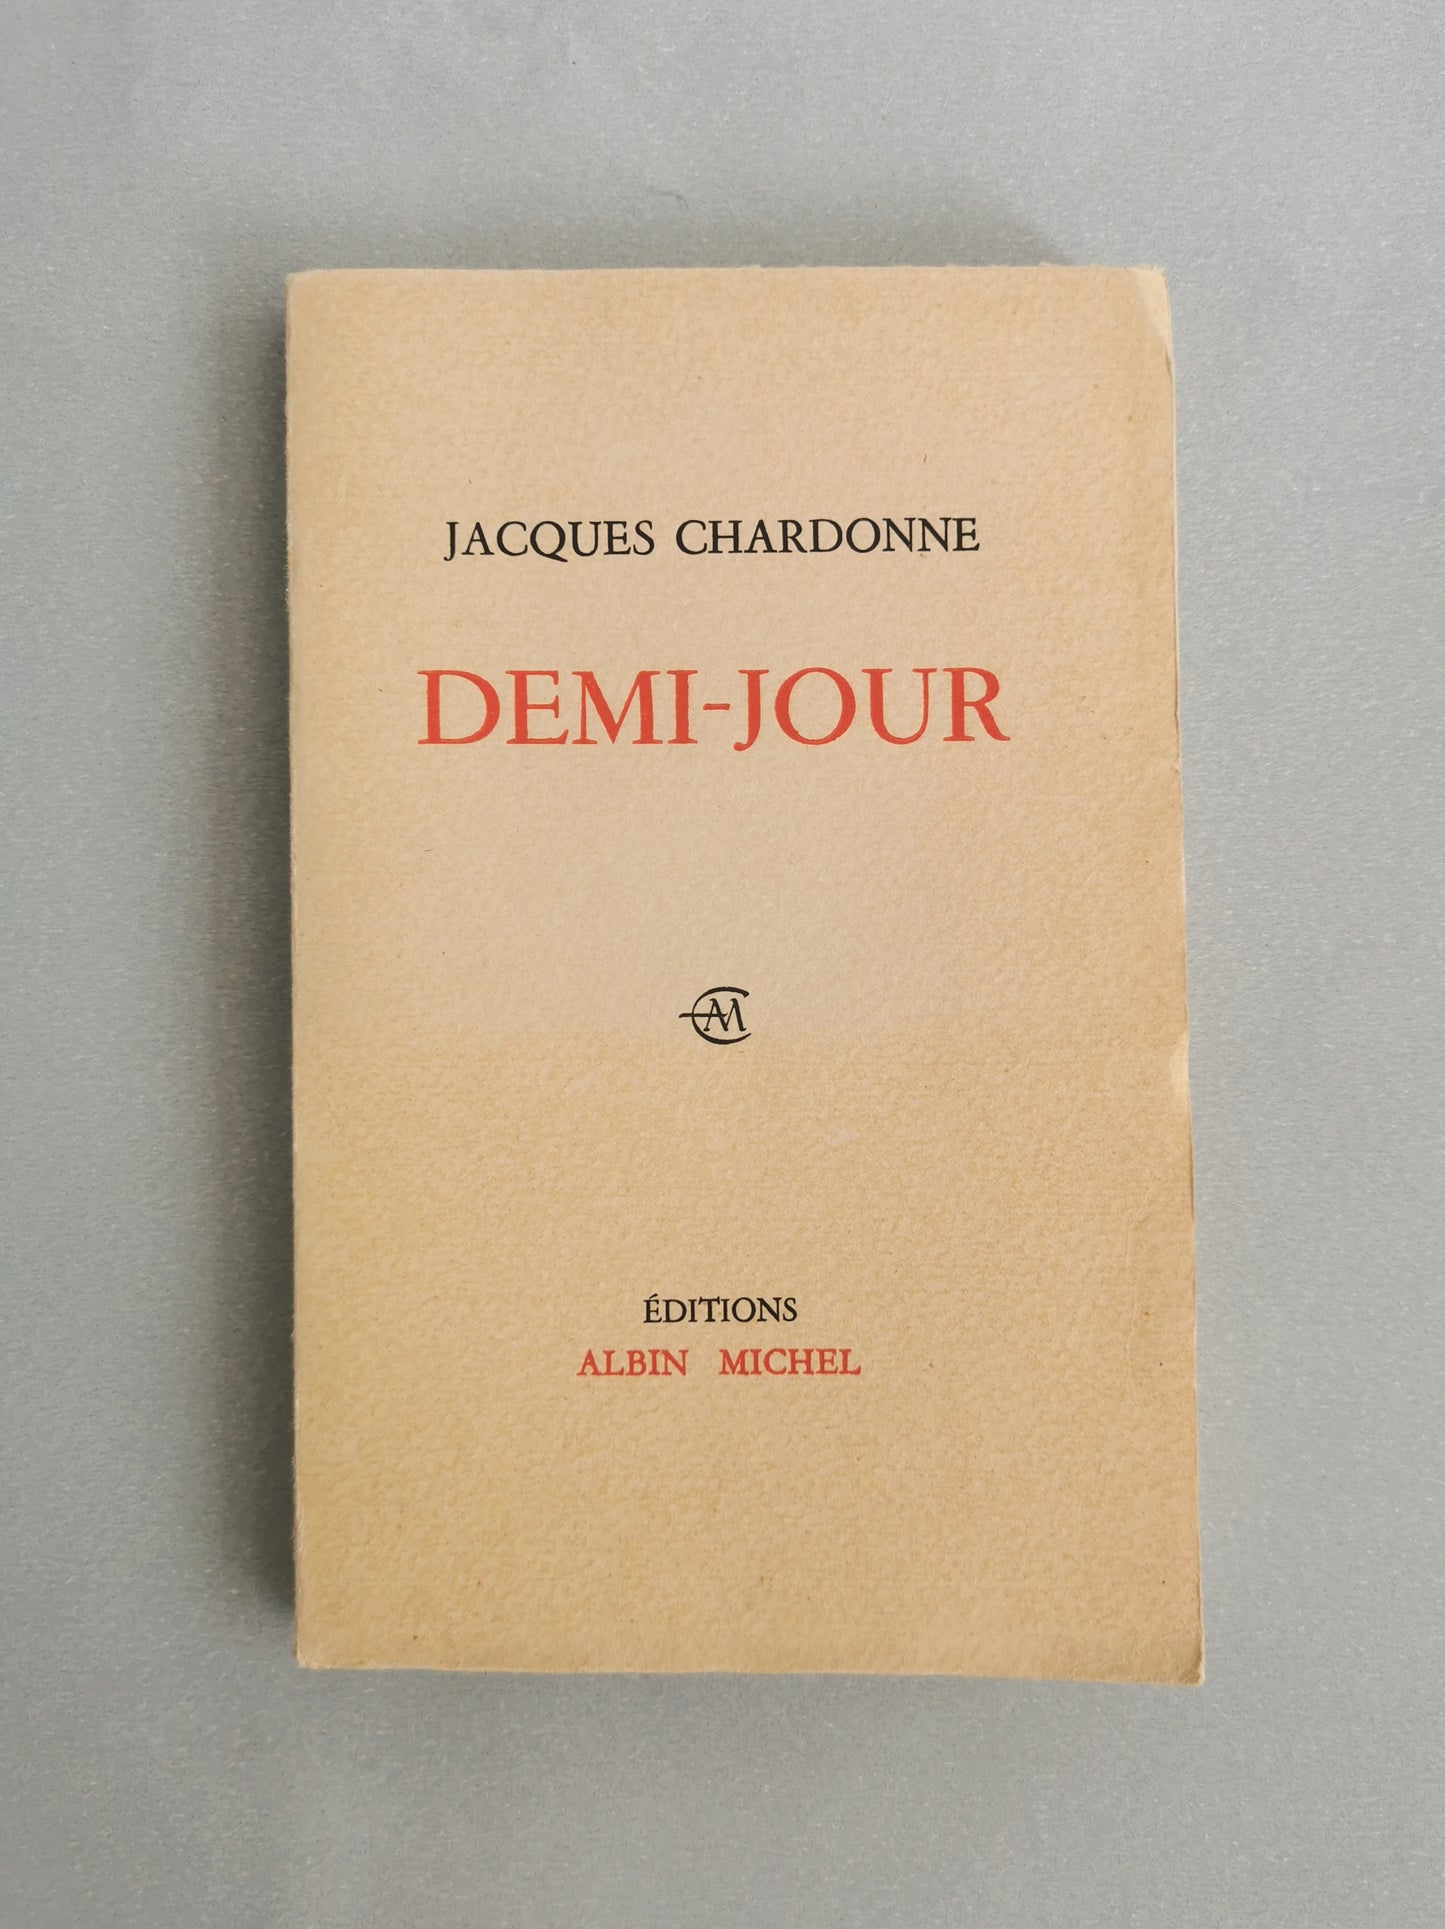 Demi-jour, Suite et Fin du "Ciel dans la fenêtre", Jacques Chardonne, Editions Albin Michel, 1964.